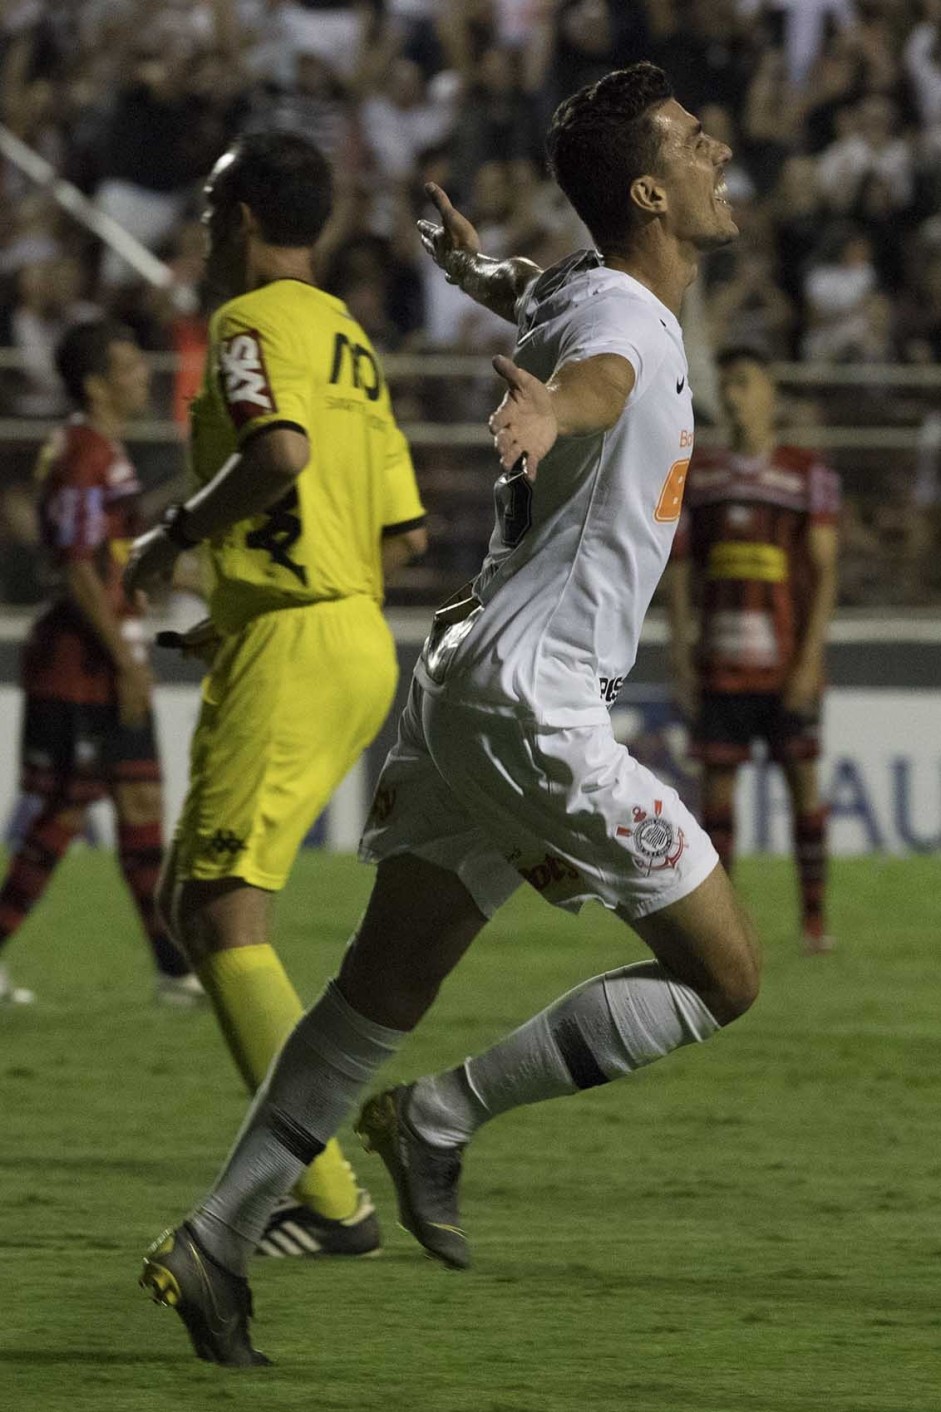 Avelar anotou o nico gol do Corinthians contra o Ituano